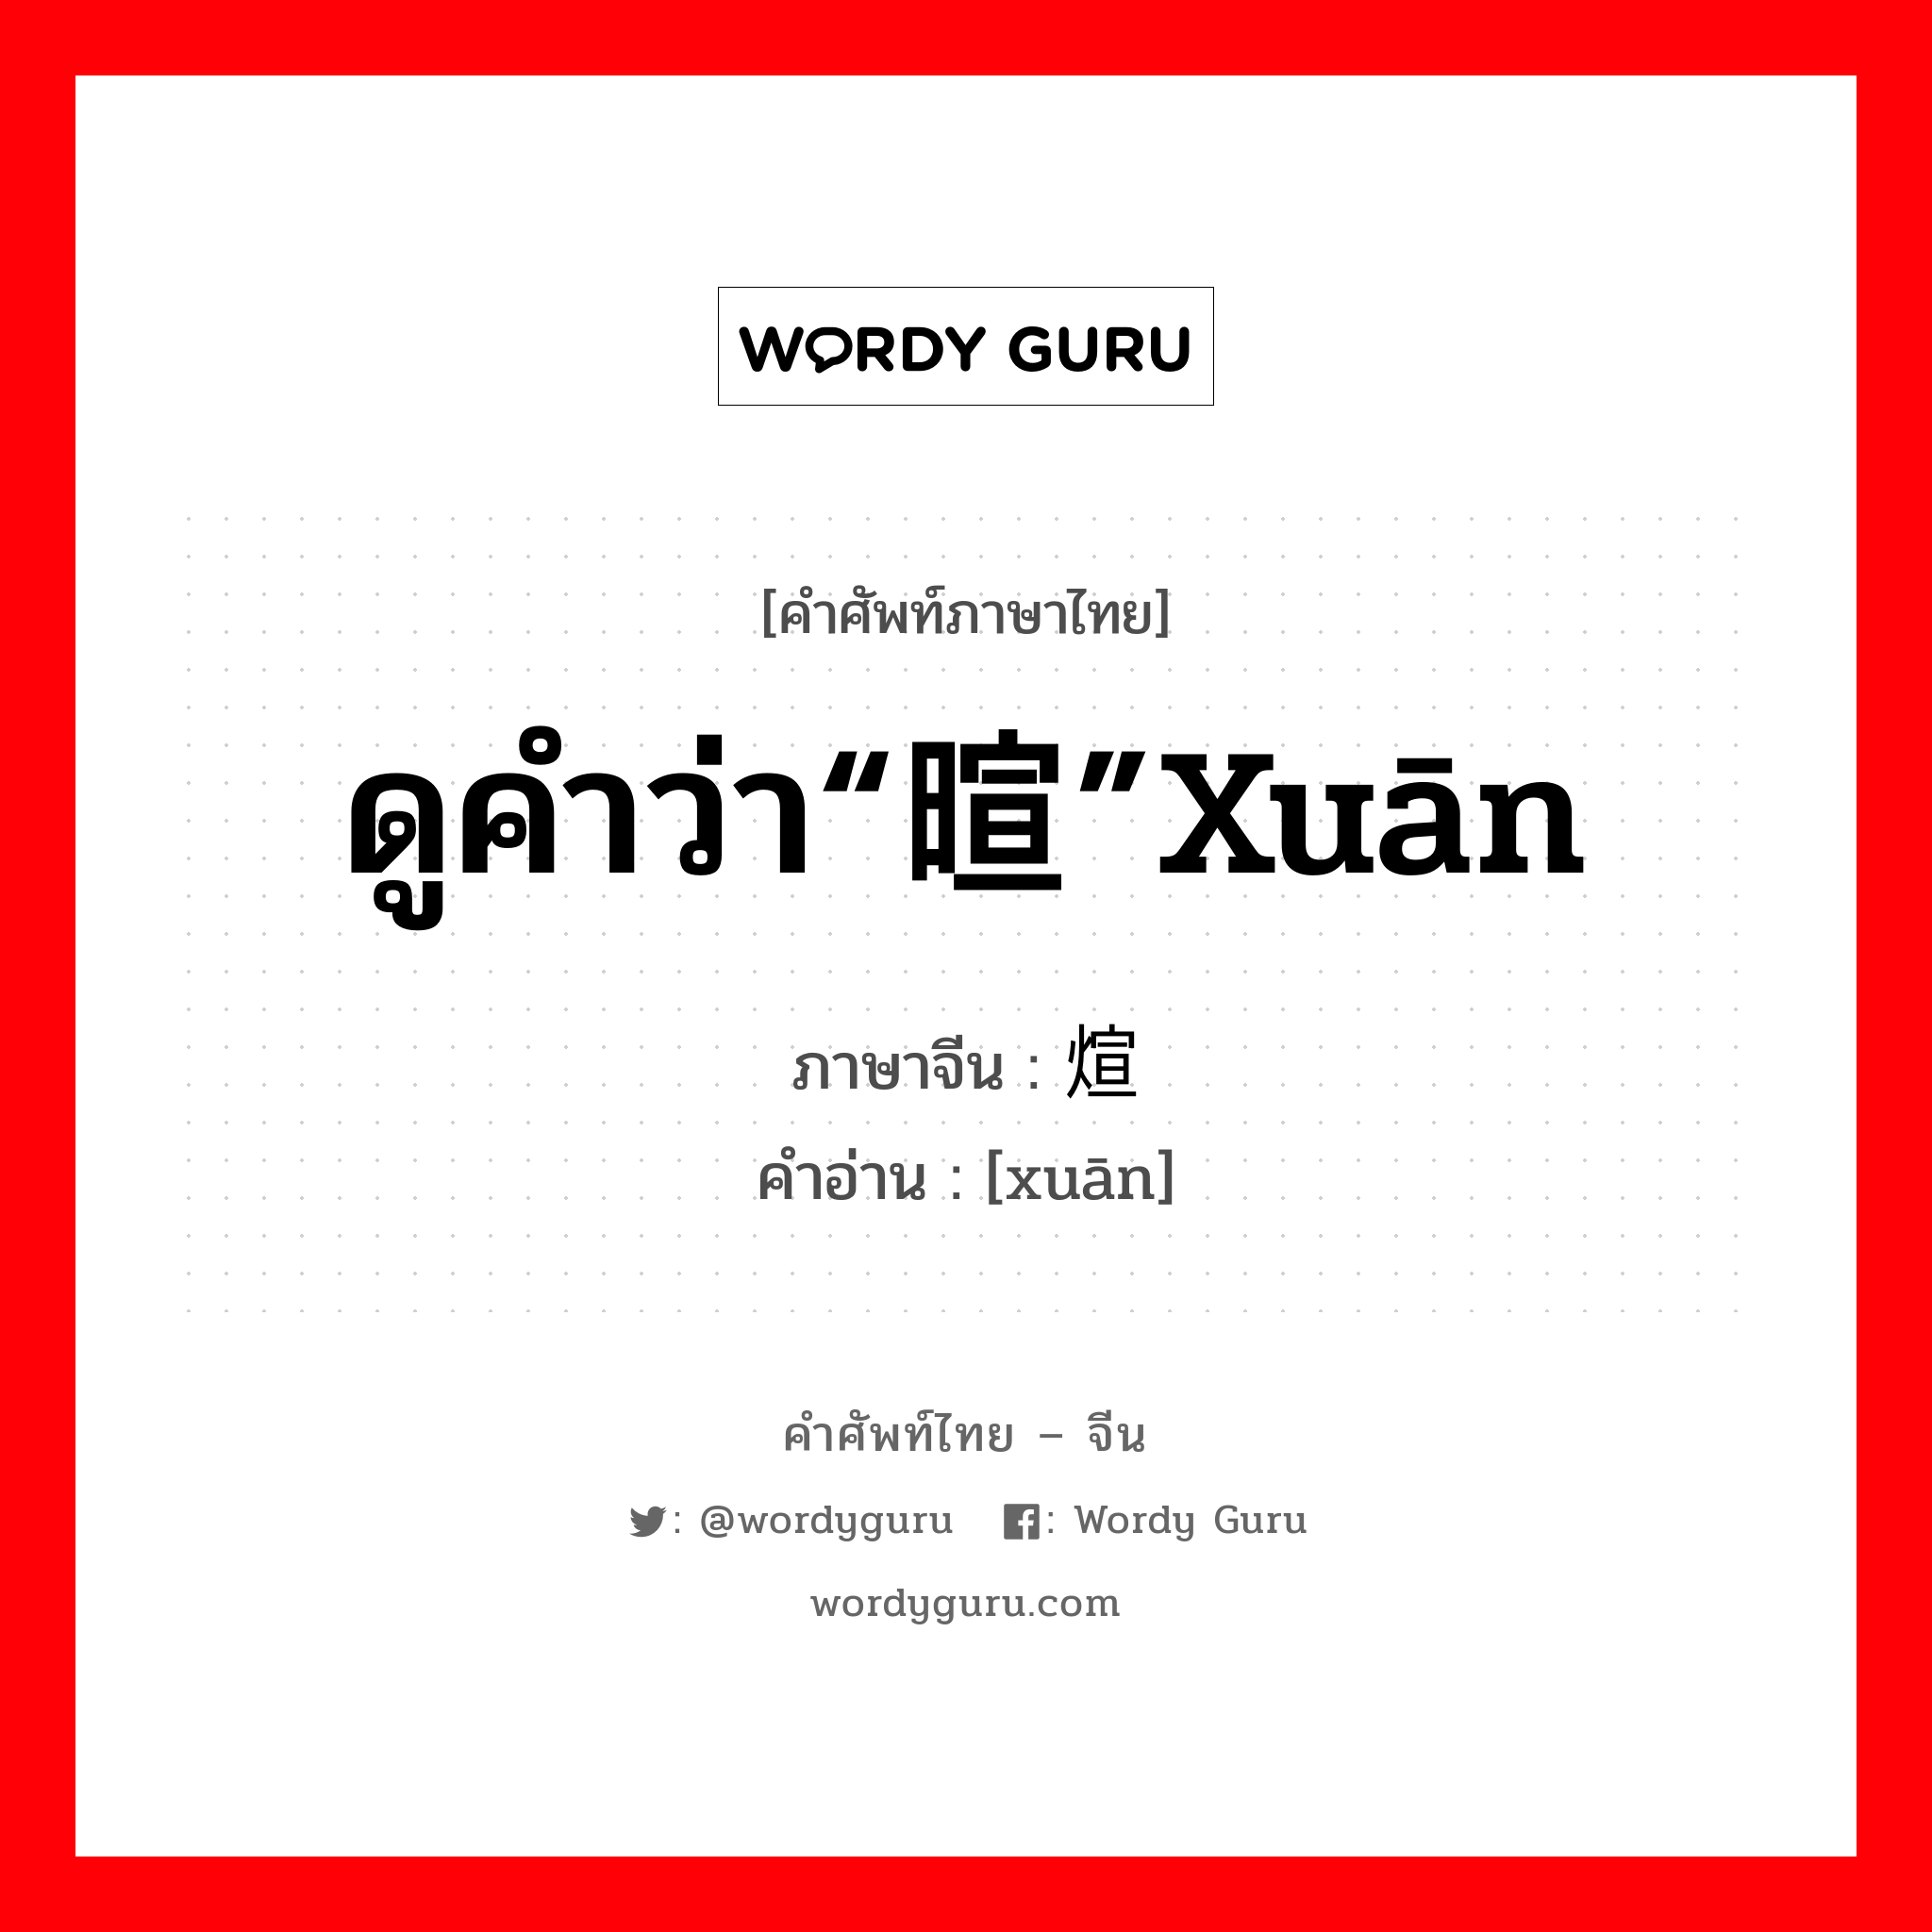 ดูคำว่า“暄”xuān ภาษาจีนคืออะไร, คำศัพท์ภาษาไทย - จีน ดูคำว่า“暄”xuān ภาษาจีน 煊 คำอ่าน [xuān]